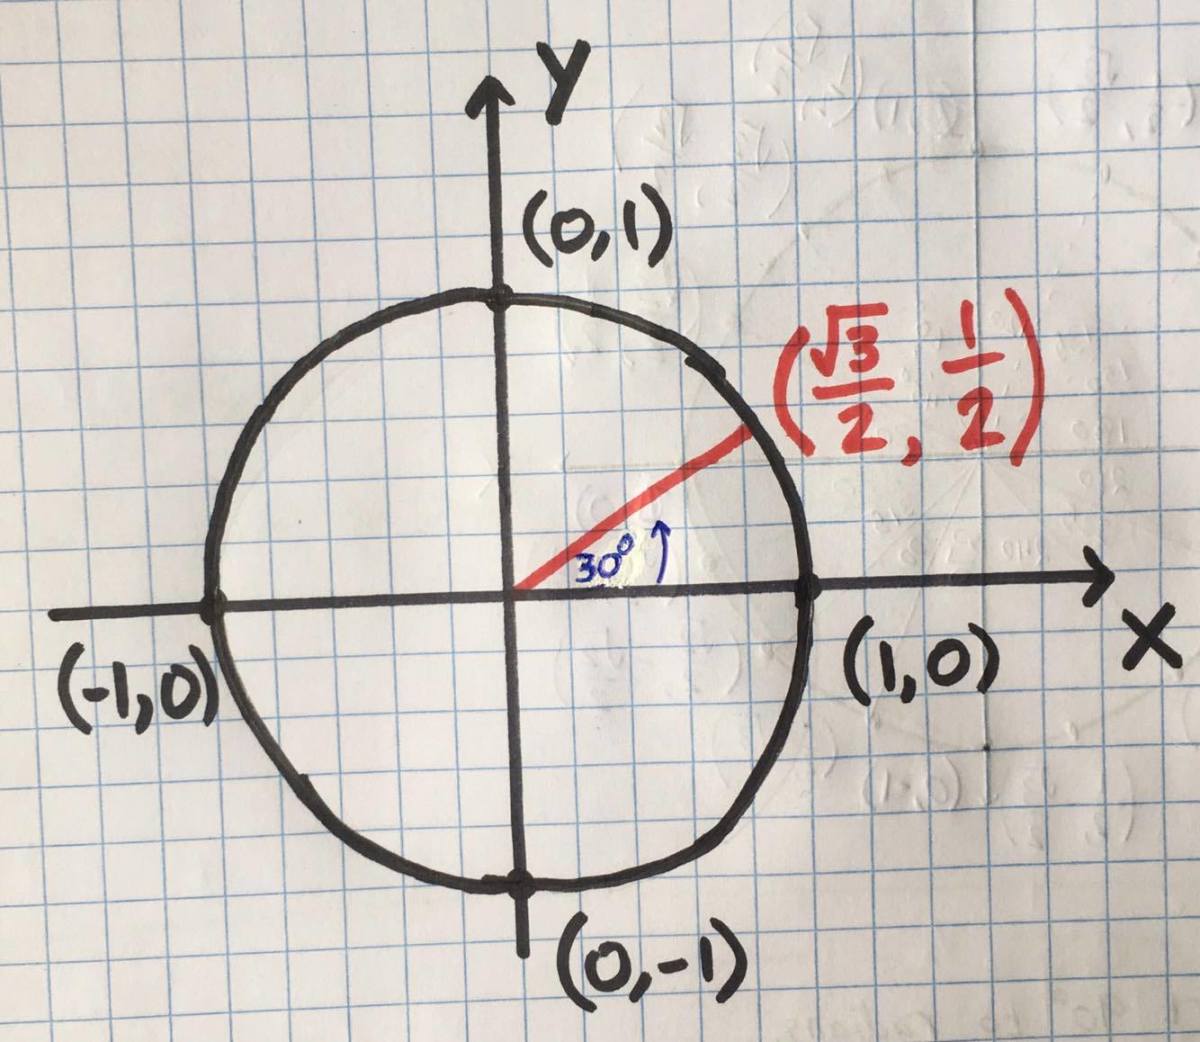 Building a unit circle